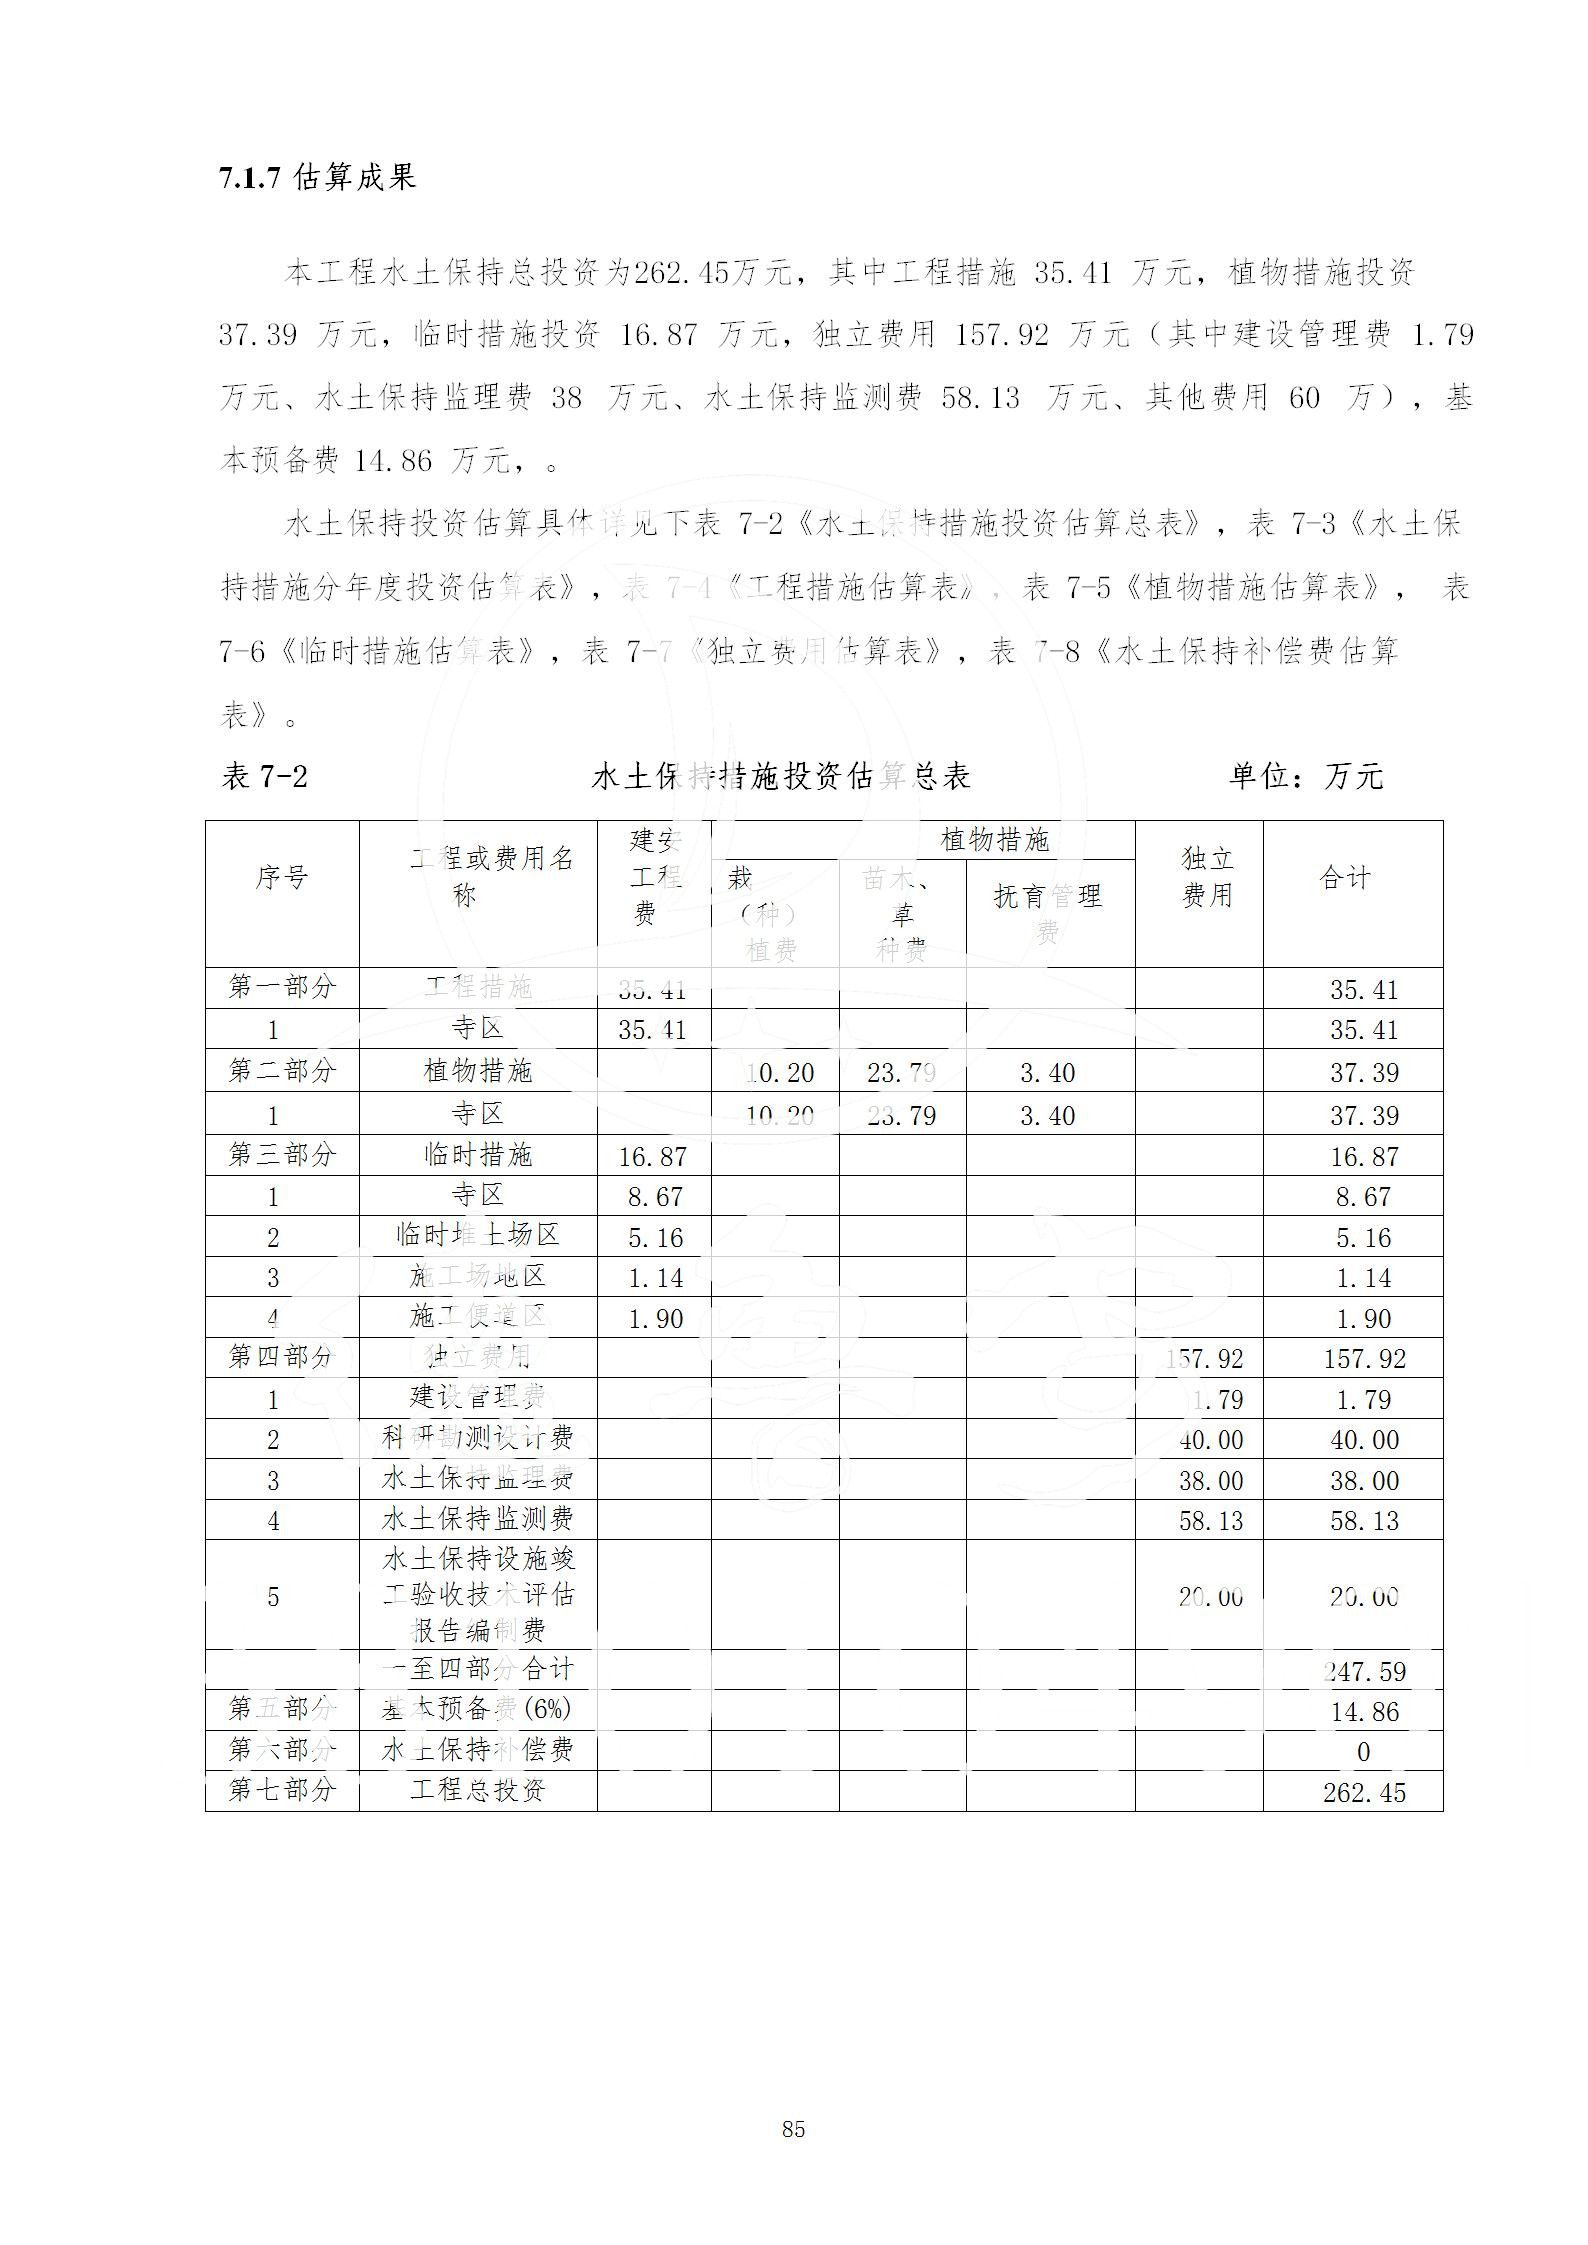 广东省大圣寺水土保持报告  修改稿5_85.jpg